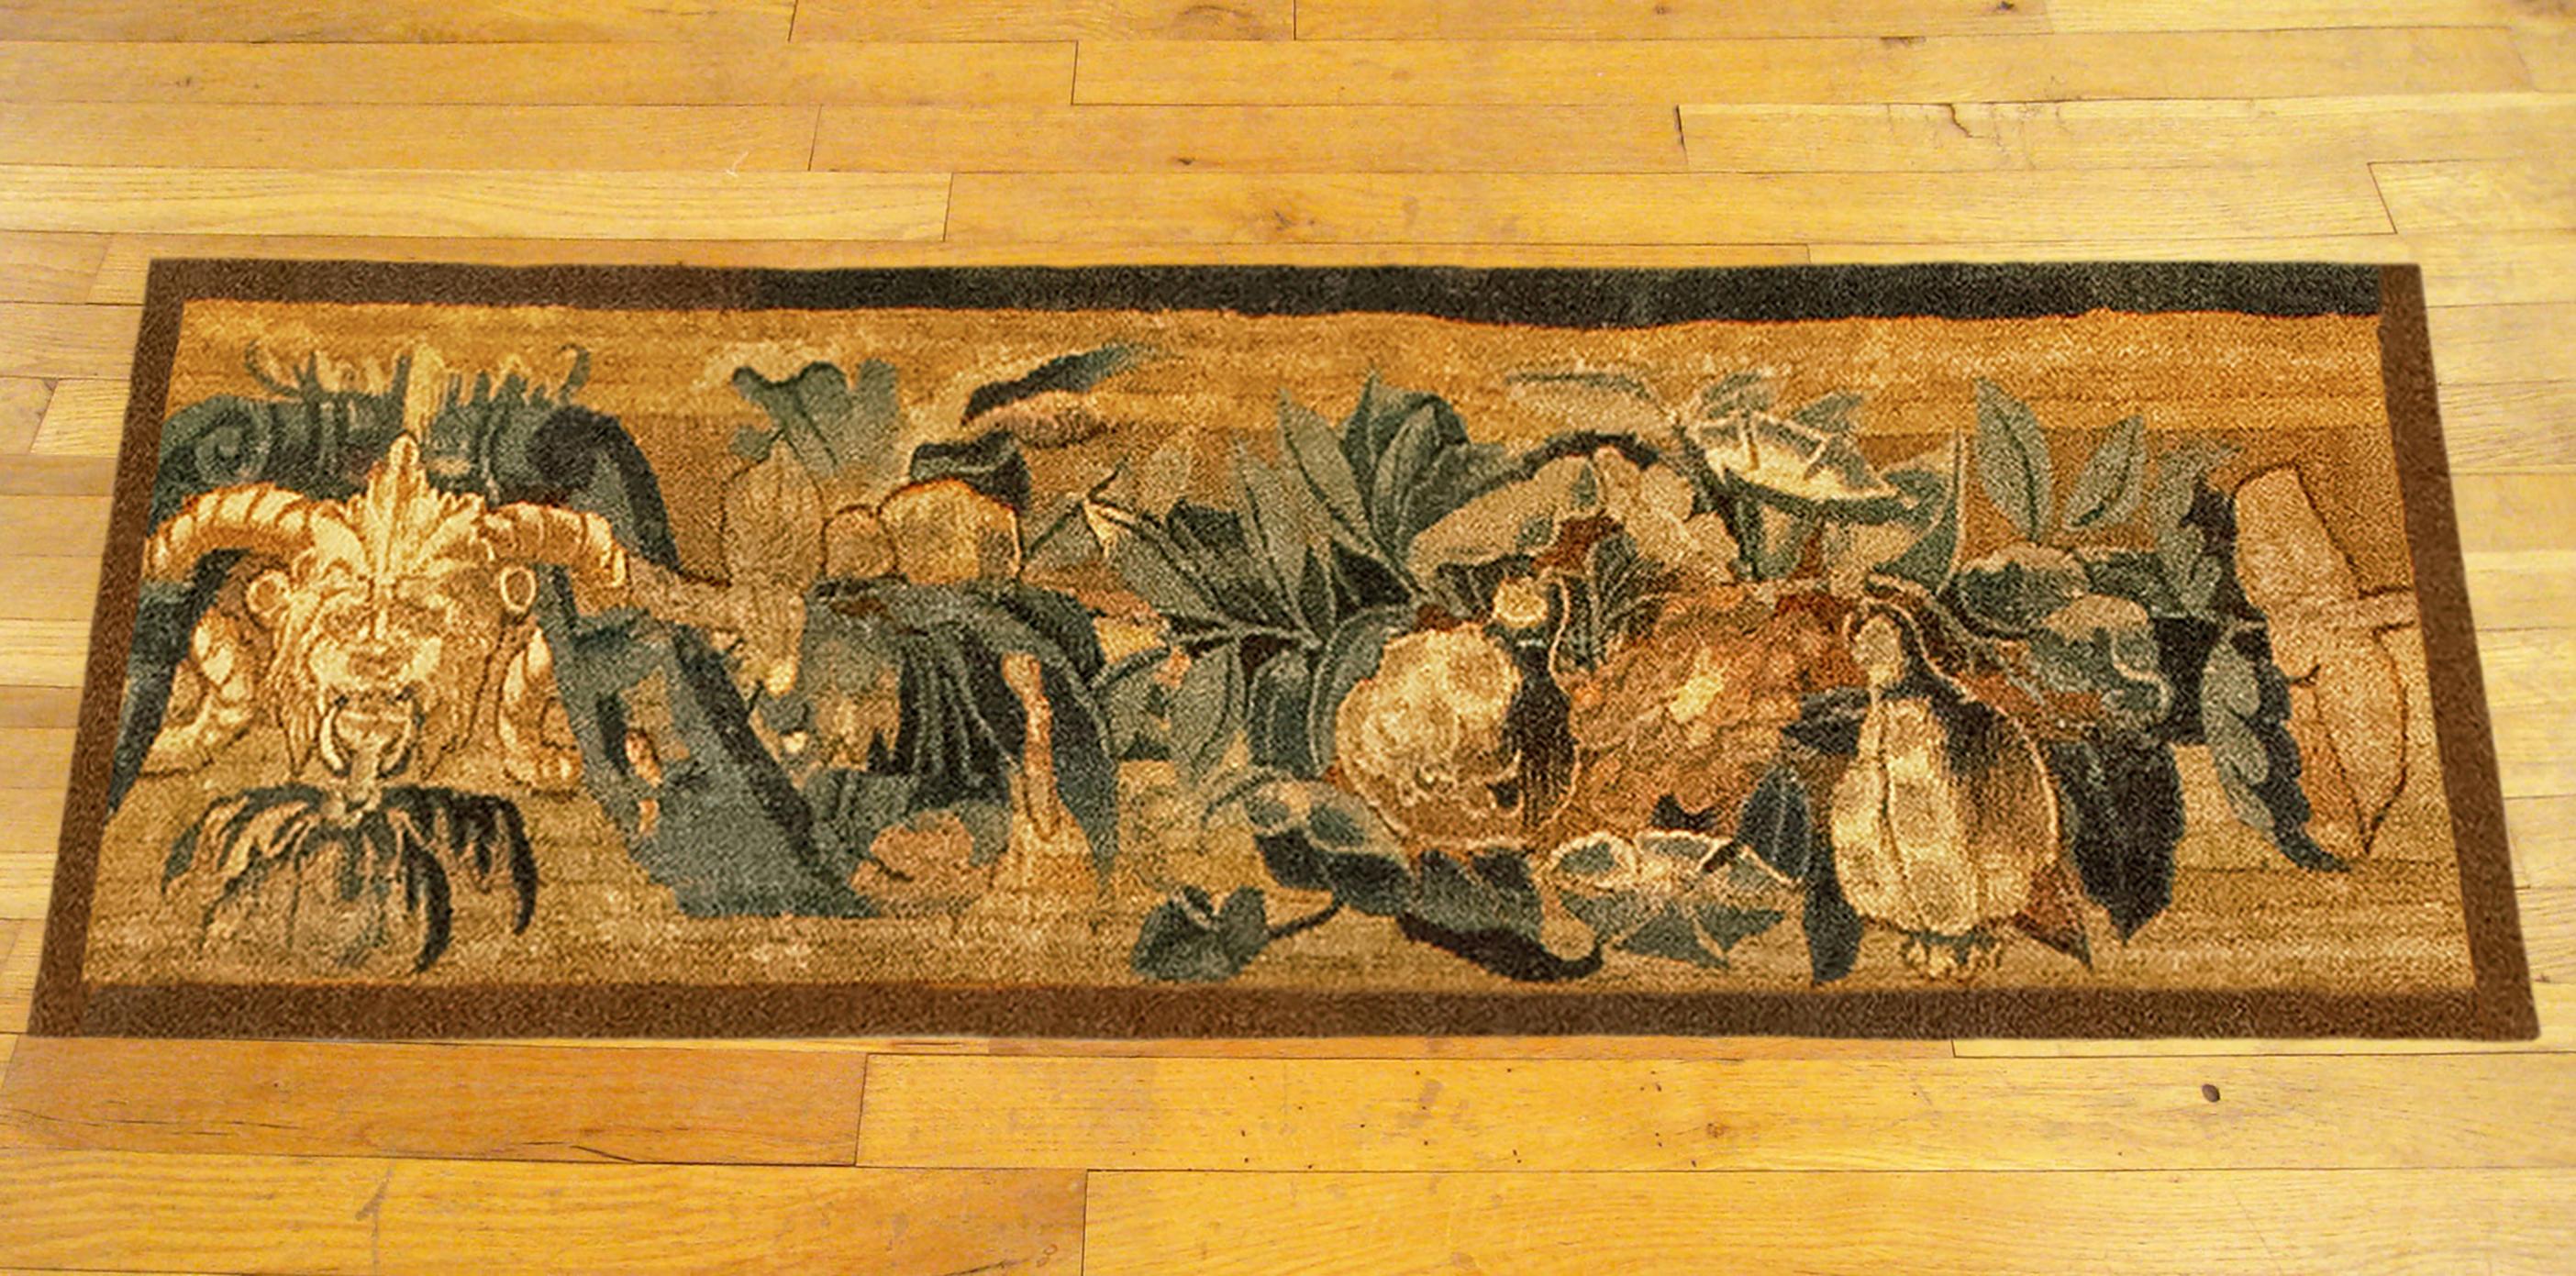 Un panneau de tapisserie historique de Bruxelles du 16ème siècle.  Ce panneau de tapisserie décoratif orienté horizontalement représente un motif de feuillage défilant, avec un grotesque sur le côté gauche, et une variété d'éléments fruitiers et